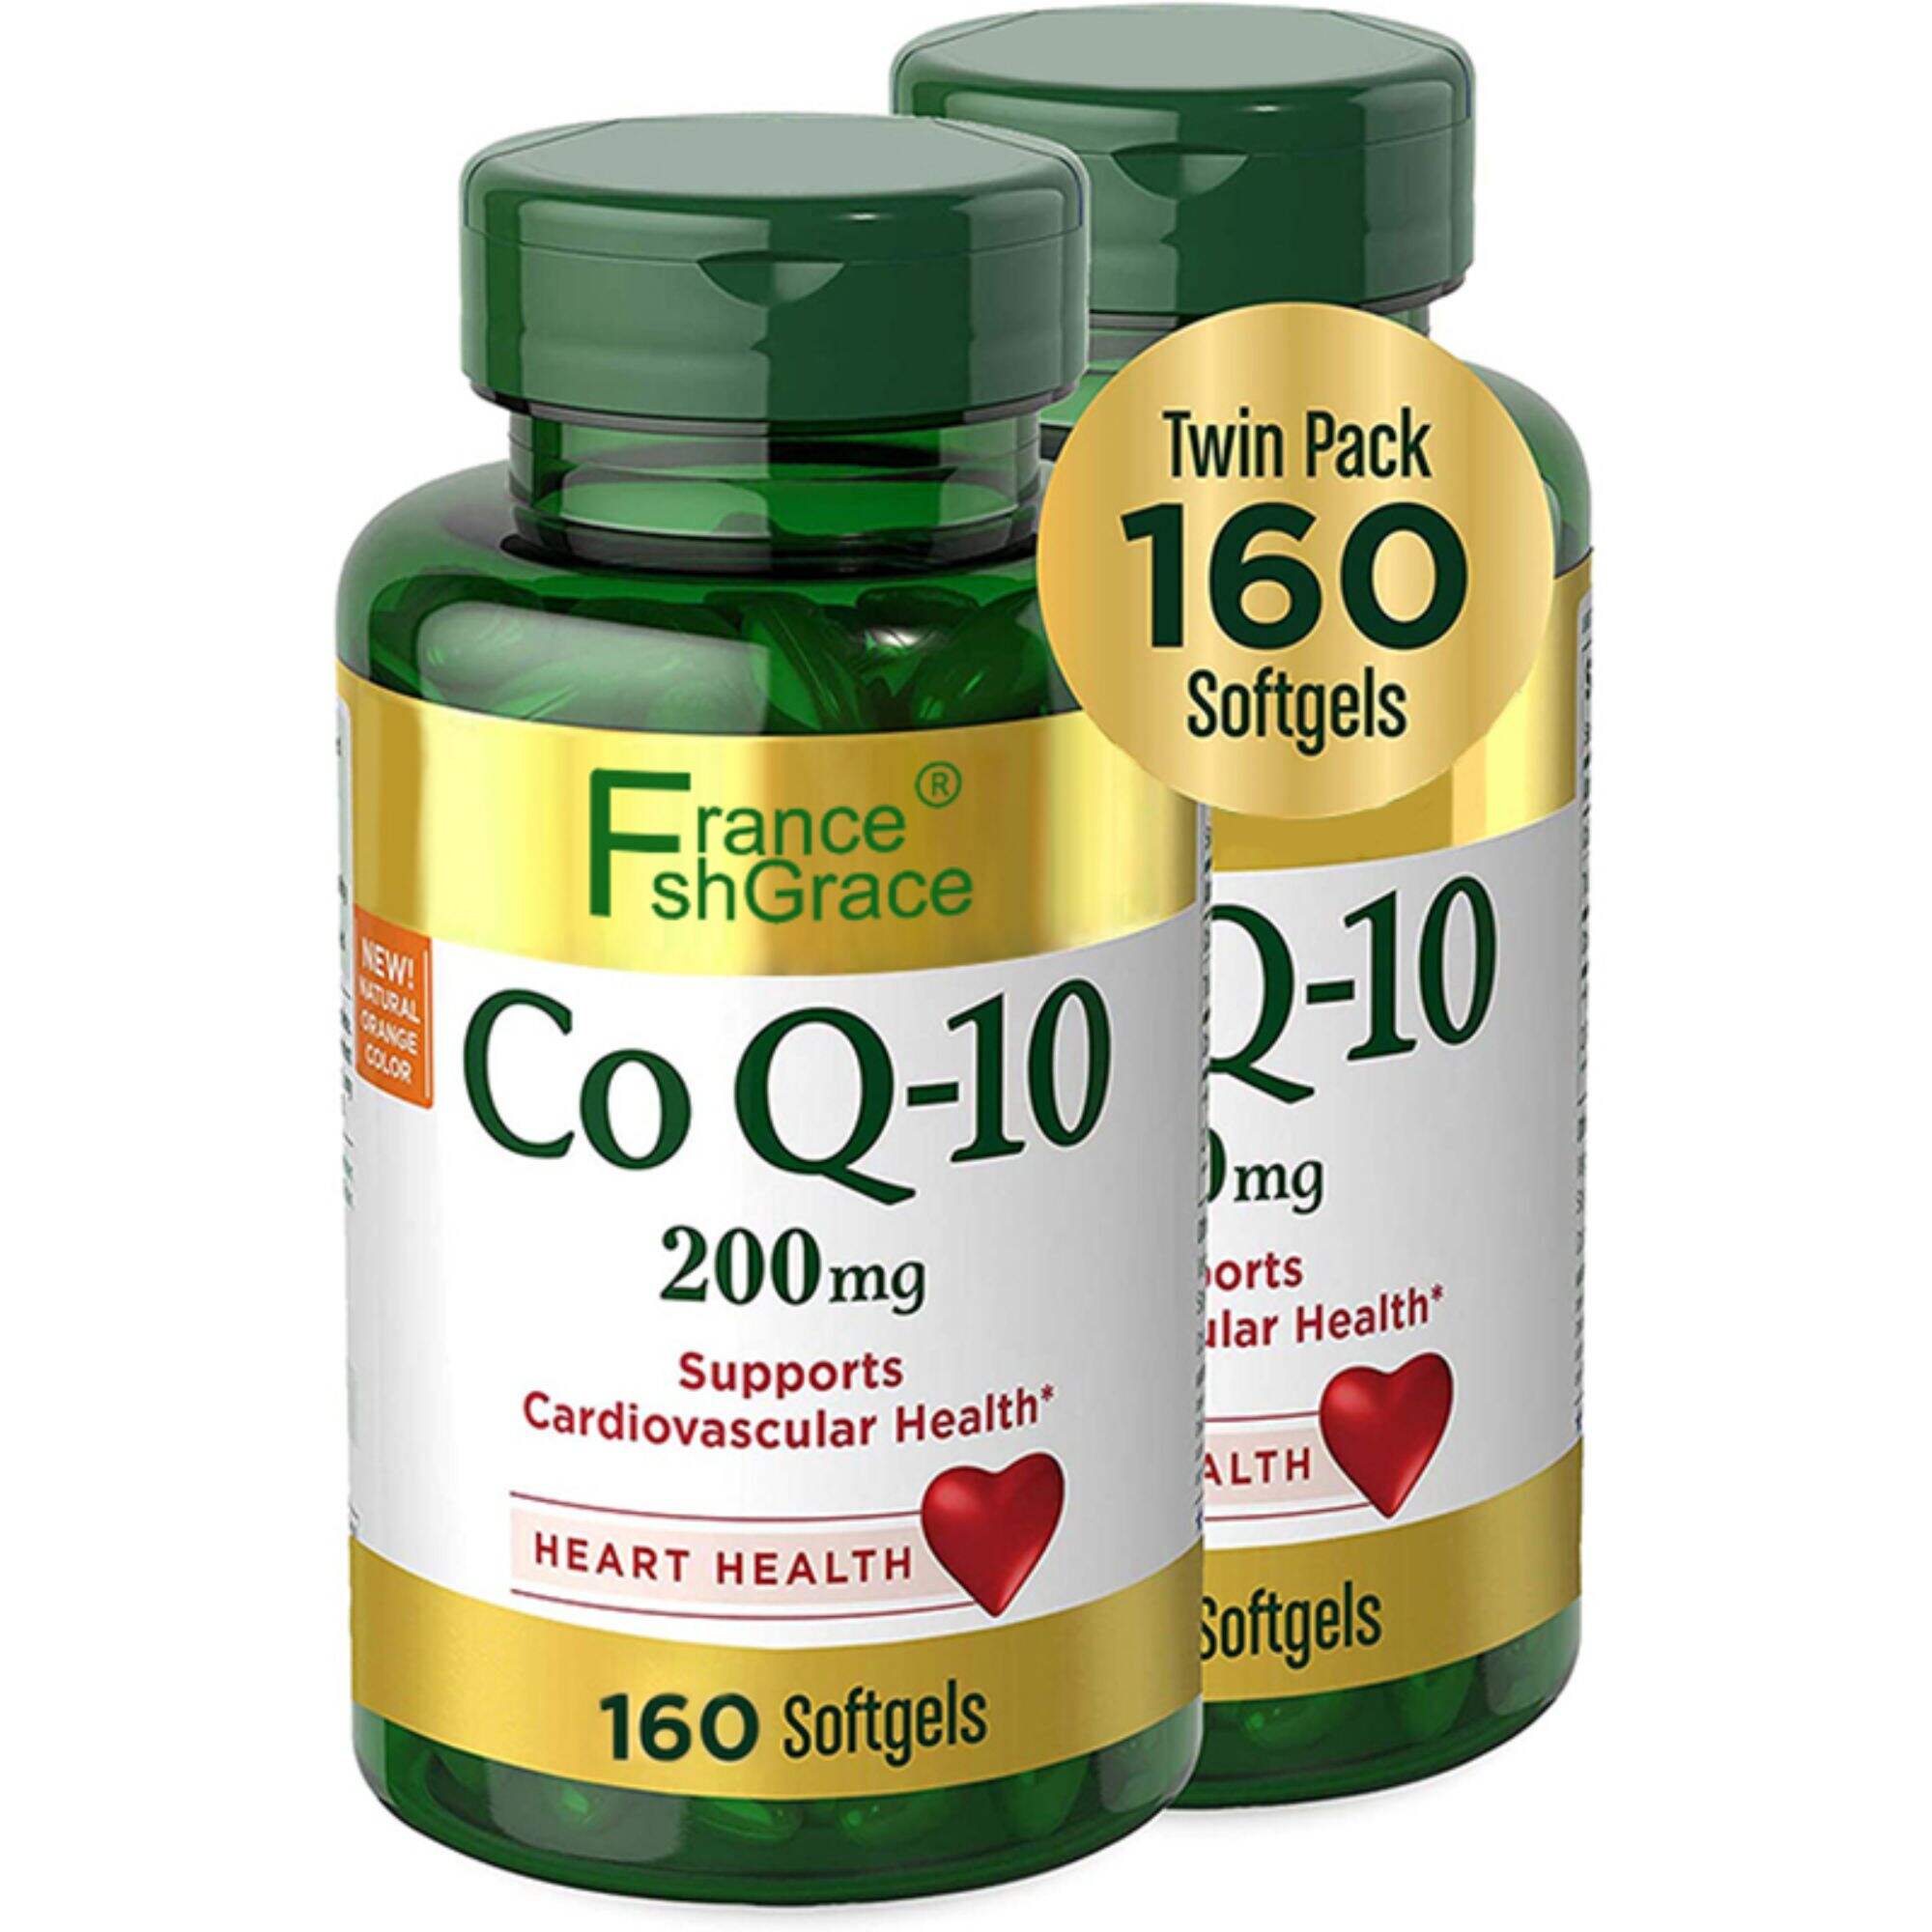 ผลิตภัณฑ์เสริมอาหาร CoQ-10 บำรุงหัวใจและหลอดเลือดและสุขภาพหัวใจ แพ็คคู่ 200 มก